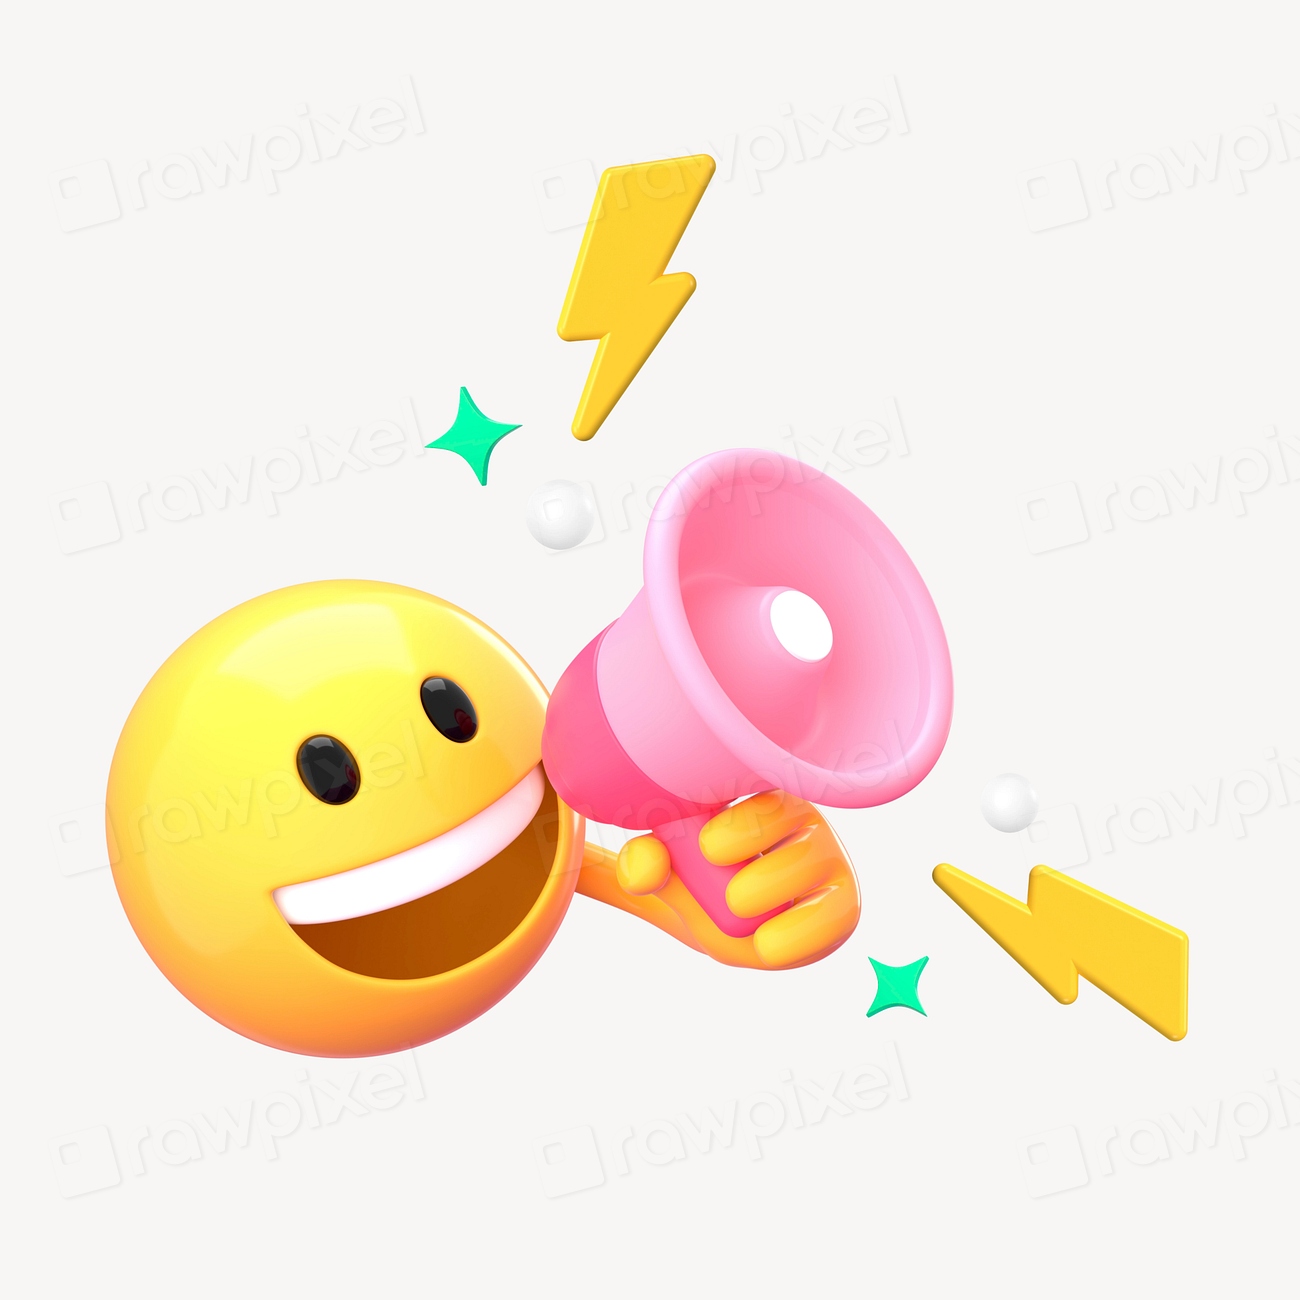 Announcement emoji, 3D emoticon illustration Premium Photo rawpixel